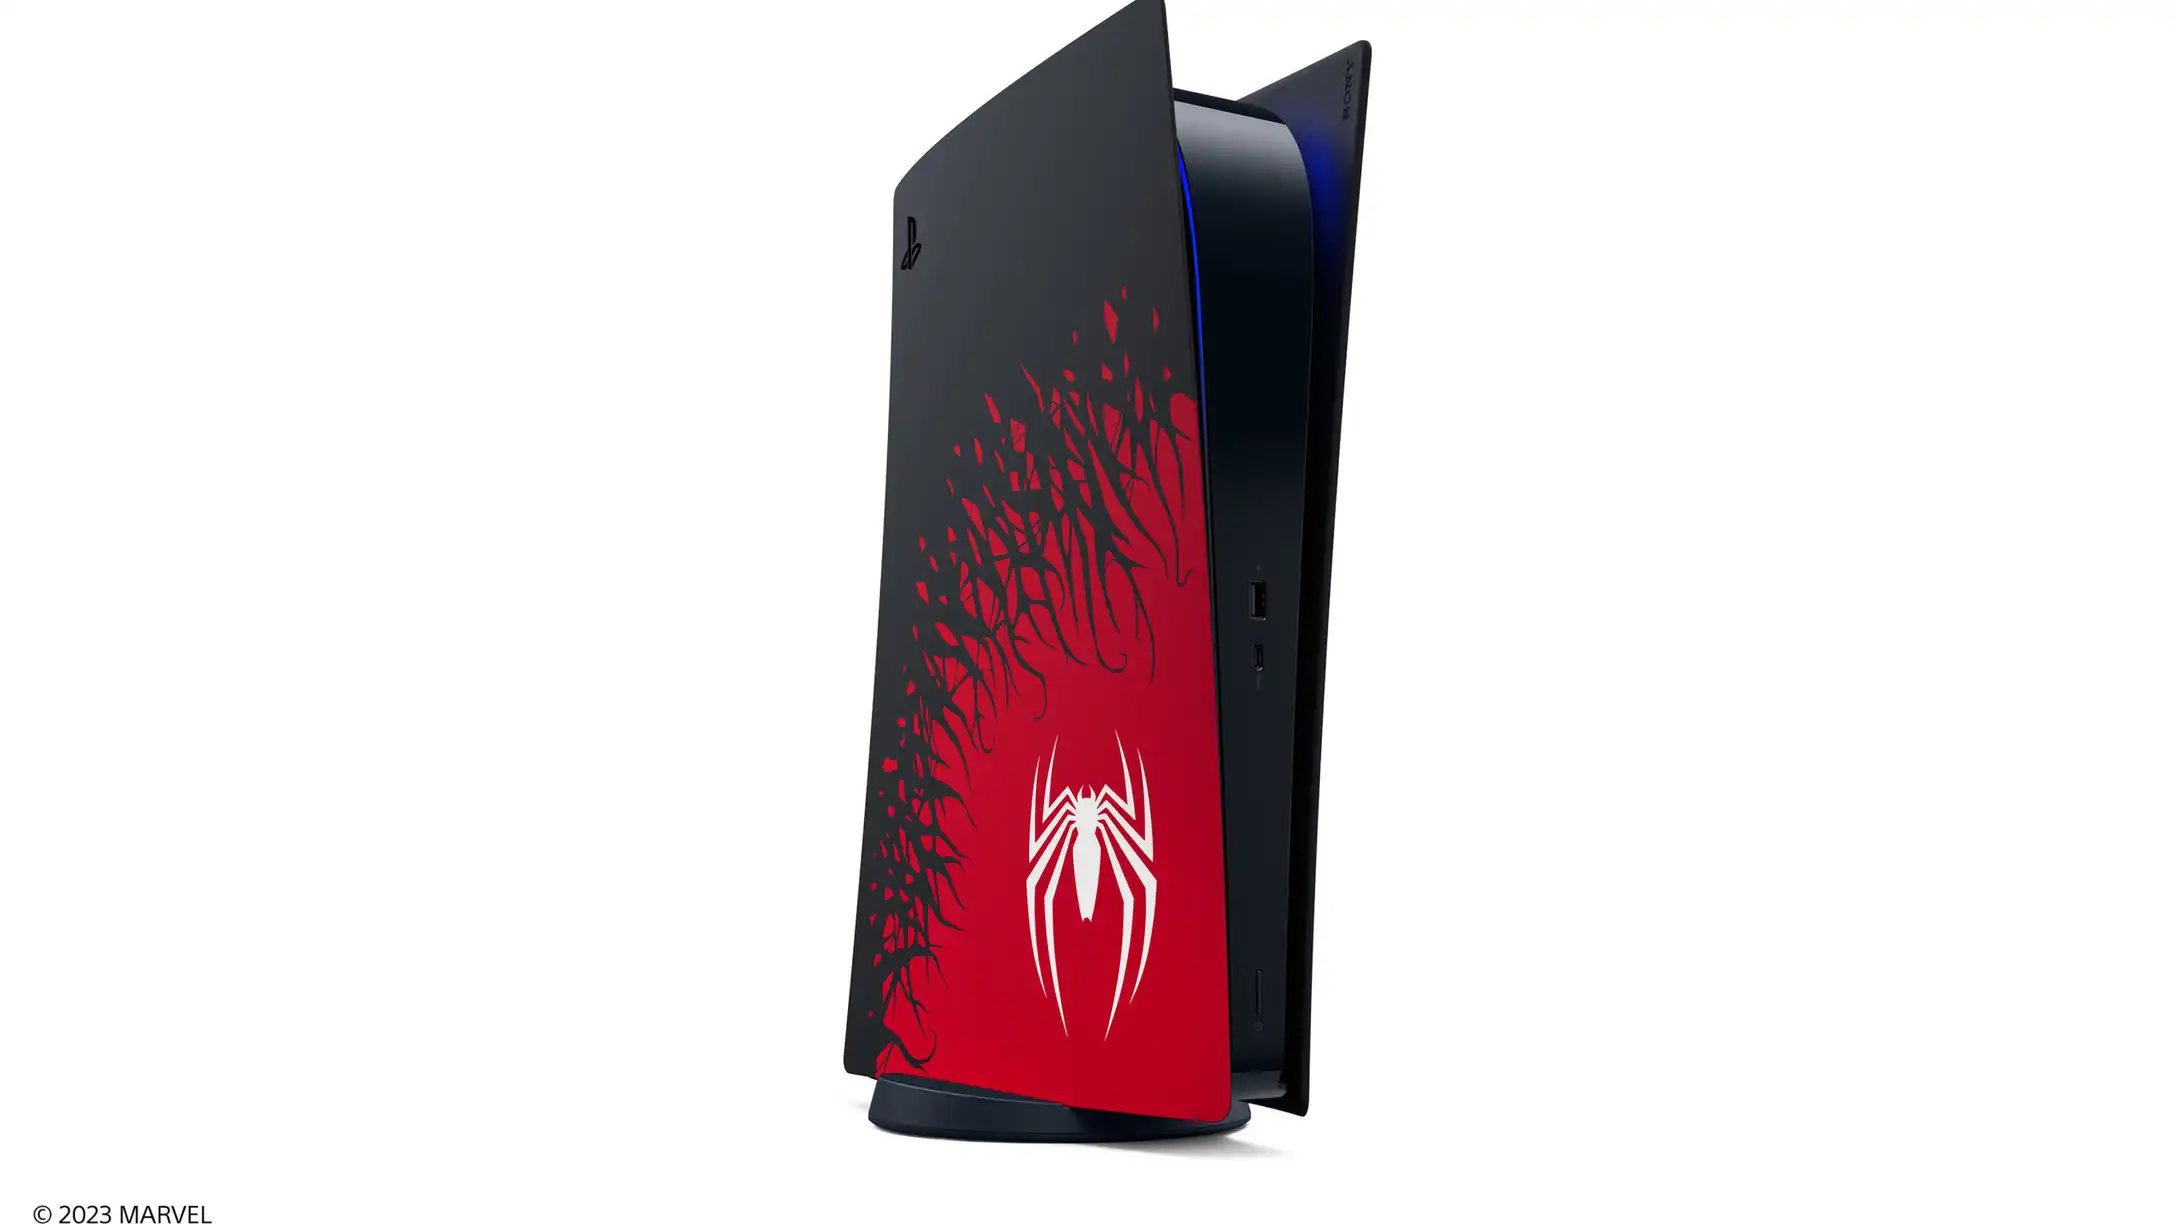 Consola PlayStation 5 Estandar Bundle Marvel's Spider-Man 2